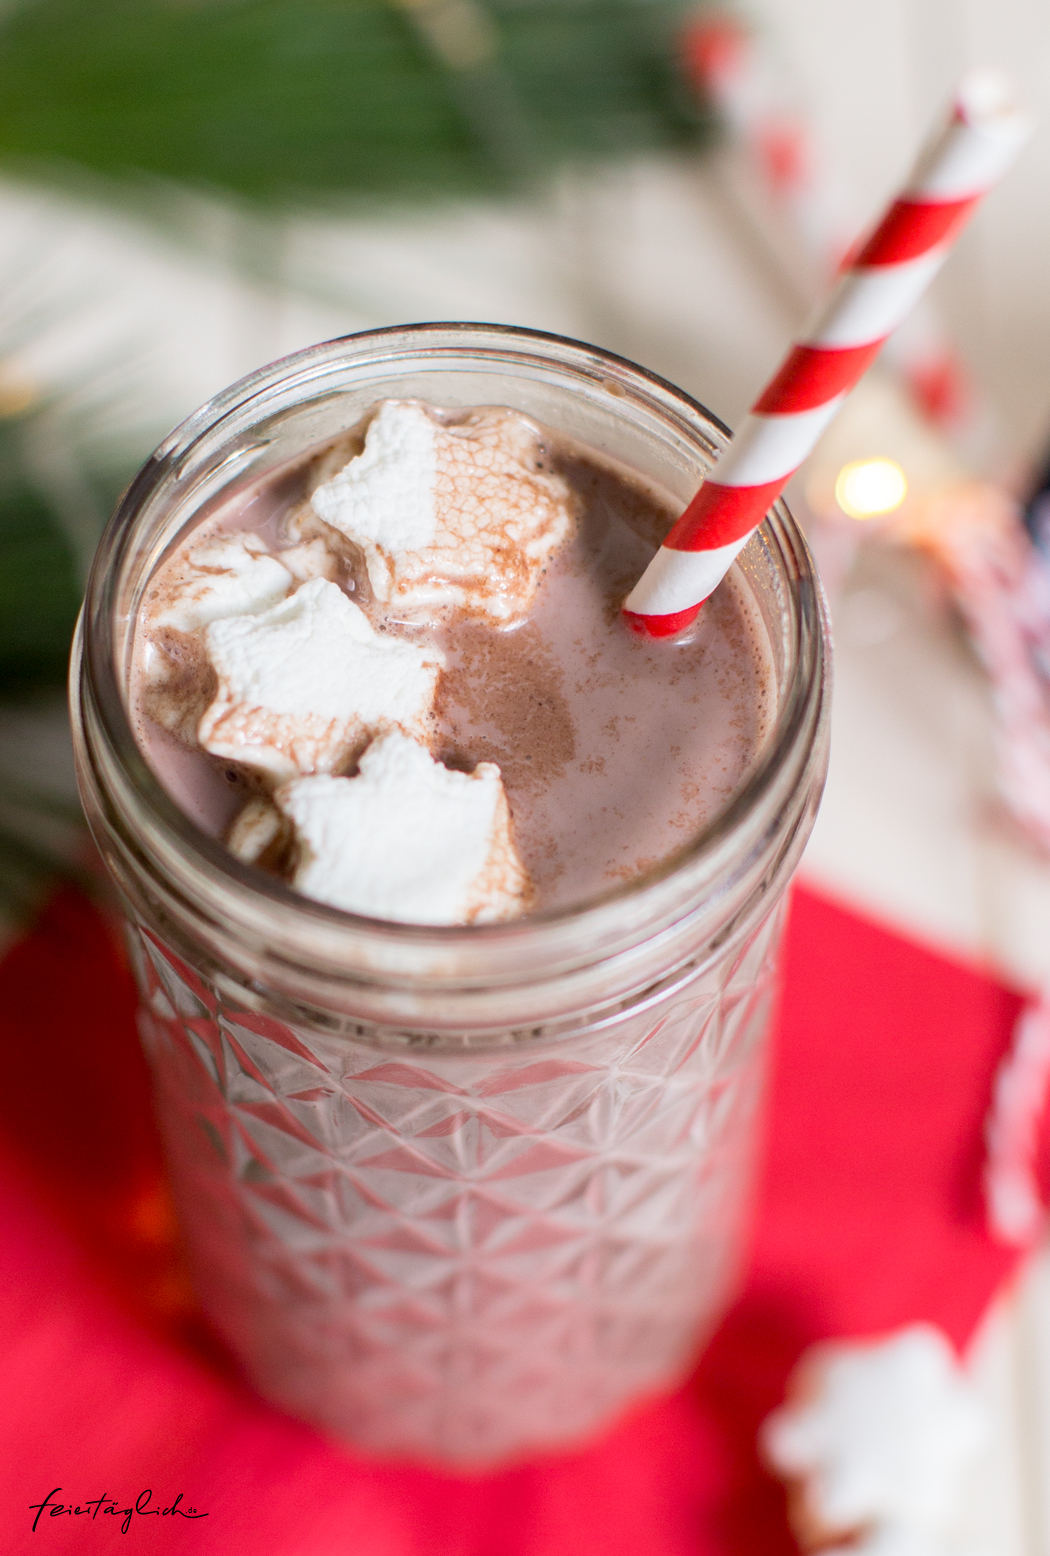 Geschenke aus der Küche: Heiße Weihnachts-Schokolade mit Marshmallow-Sternchen & Free-printable-Labels zum Ausdrucken